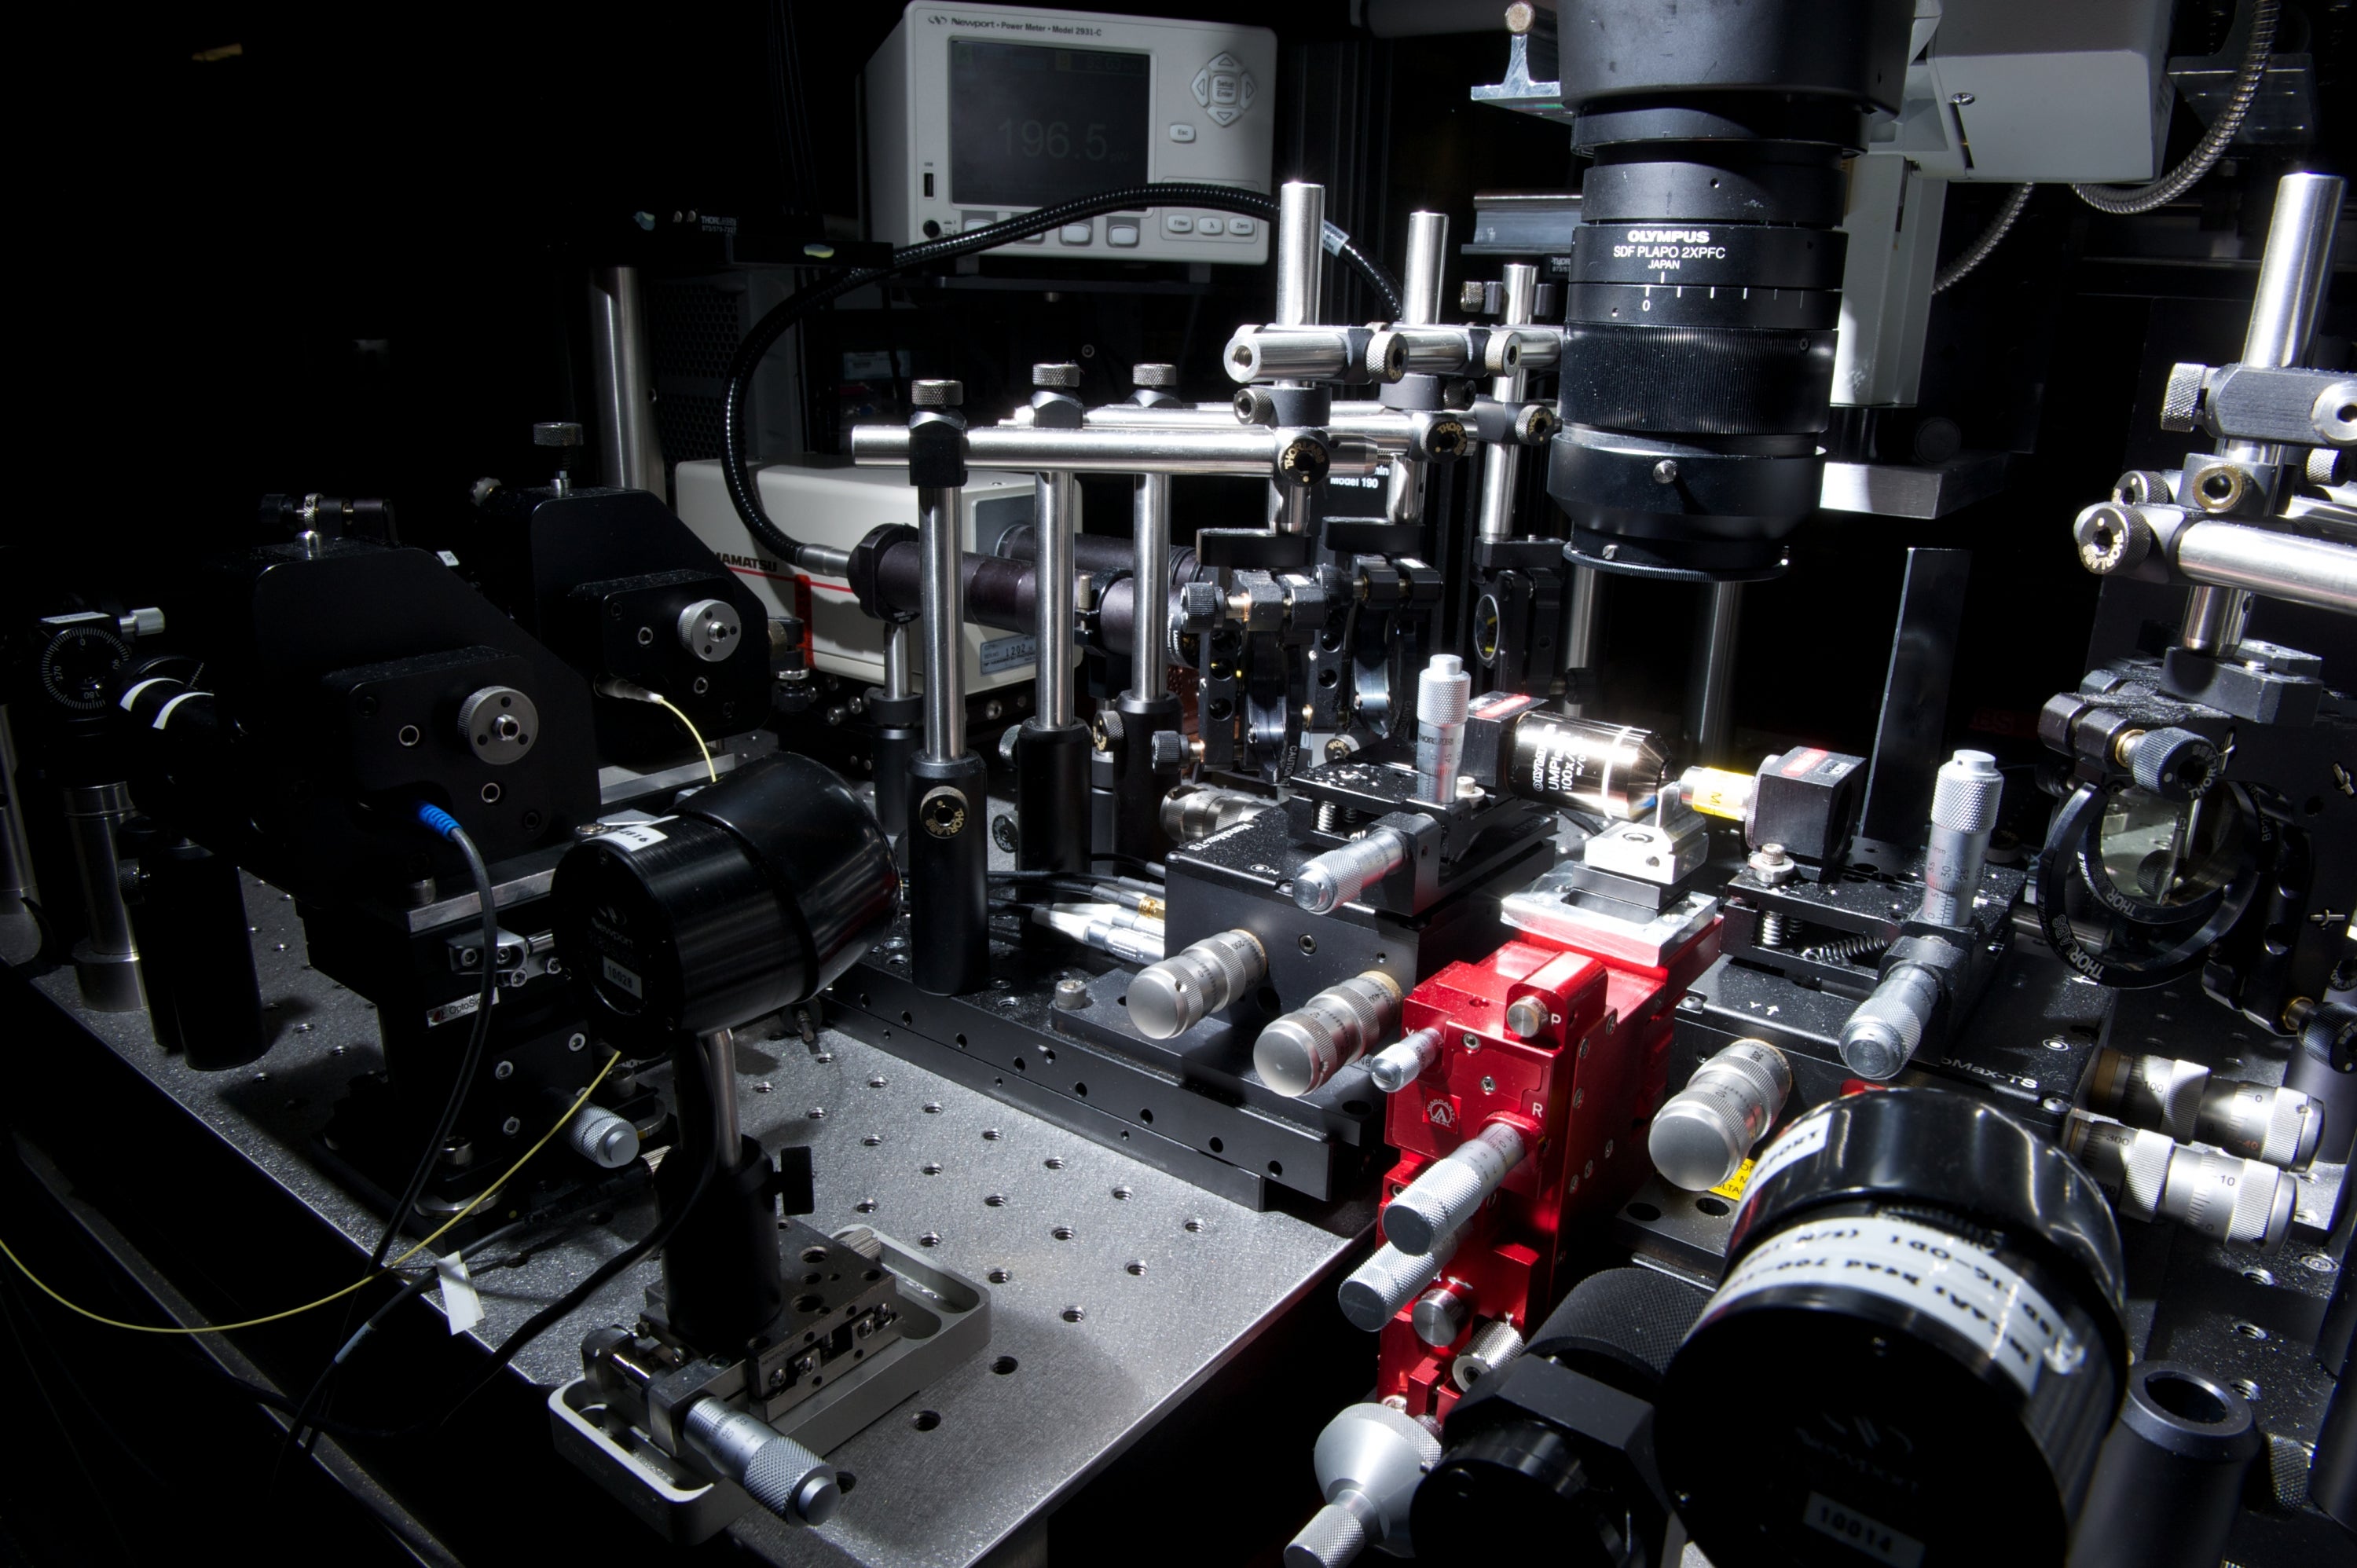 Equipment in the Quantum Photonics Laboratory